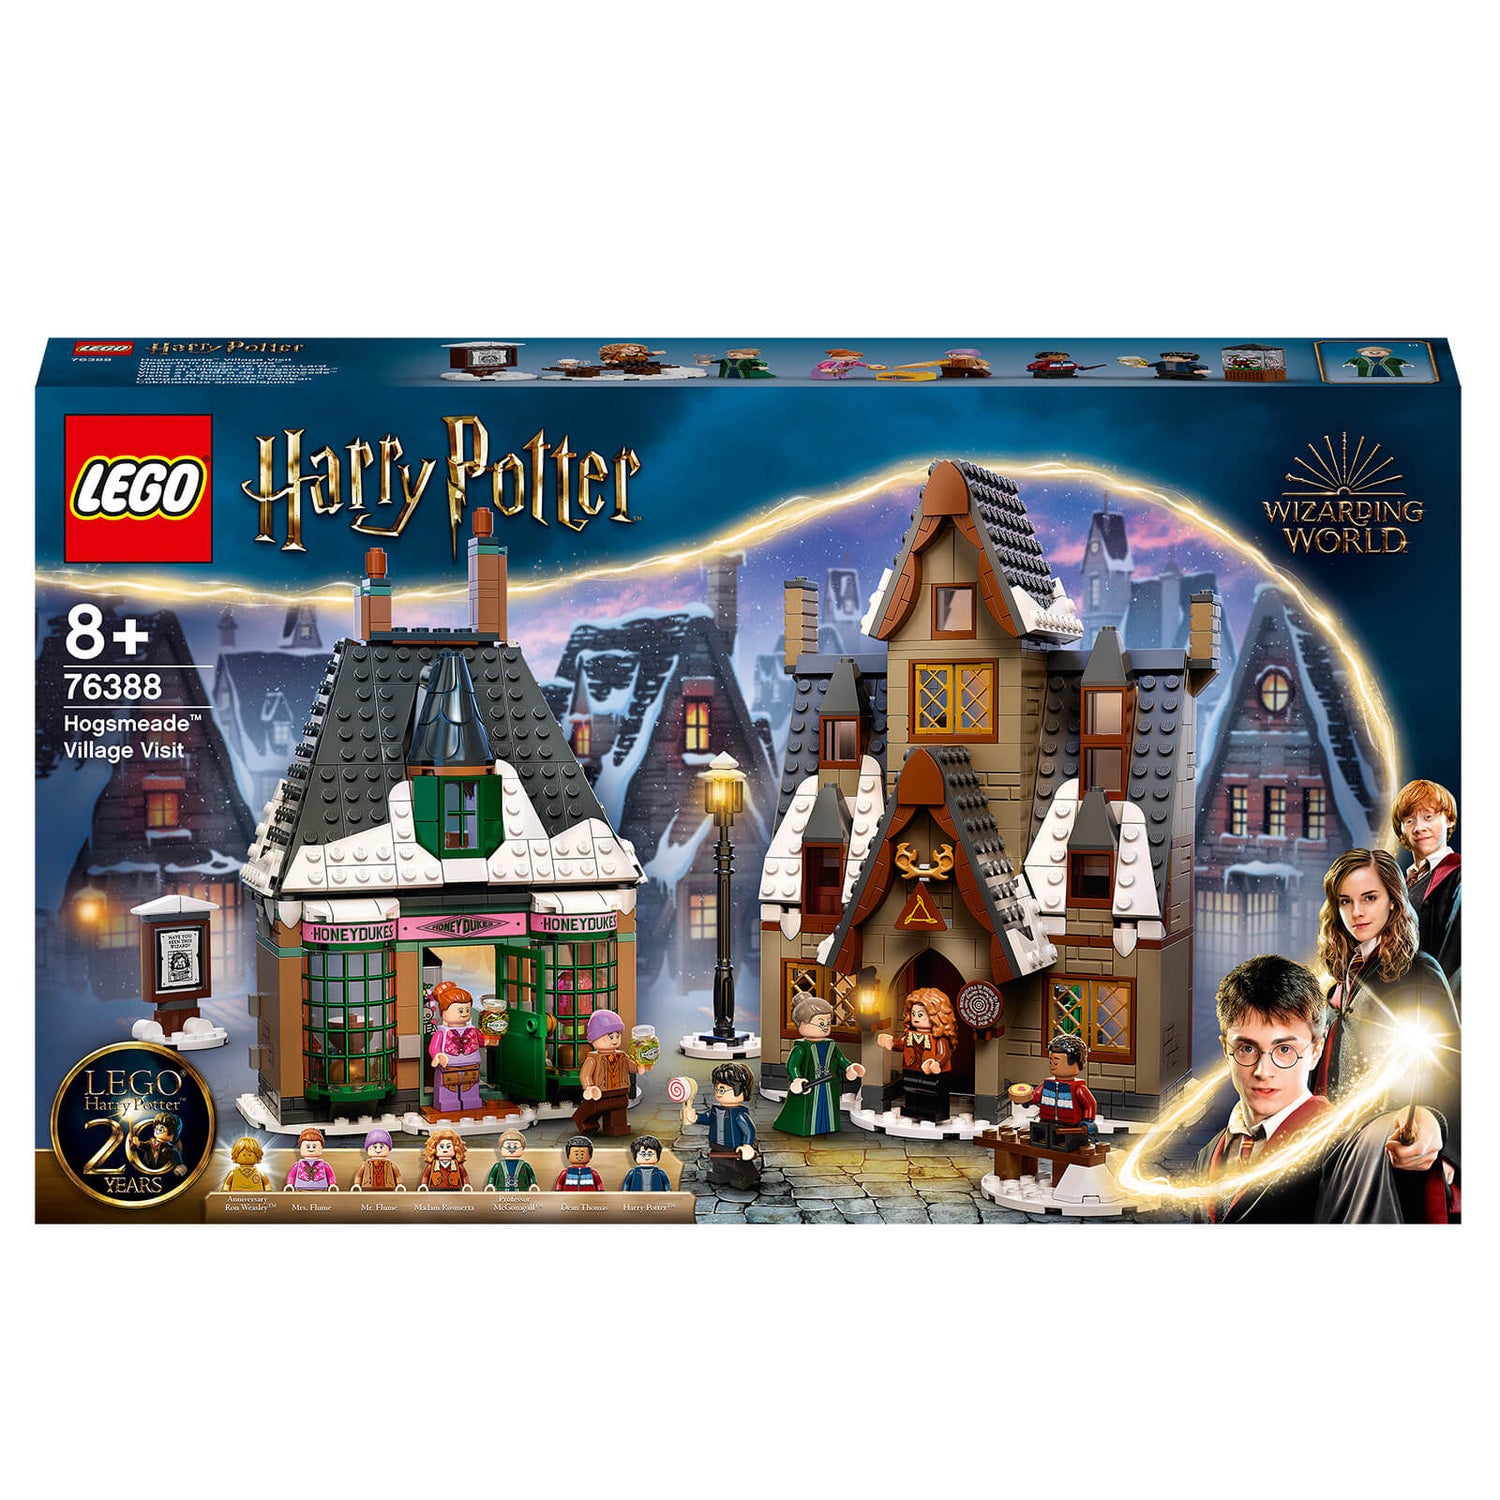 LEGO Harry Potter: Hogsmeade Village Visit House Set (76388)